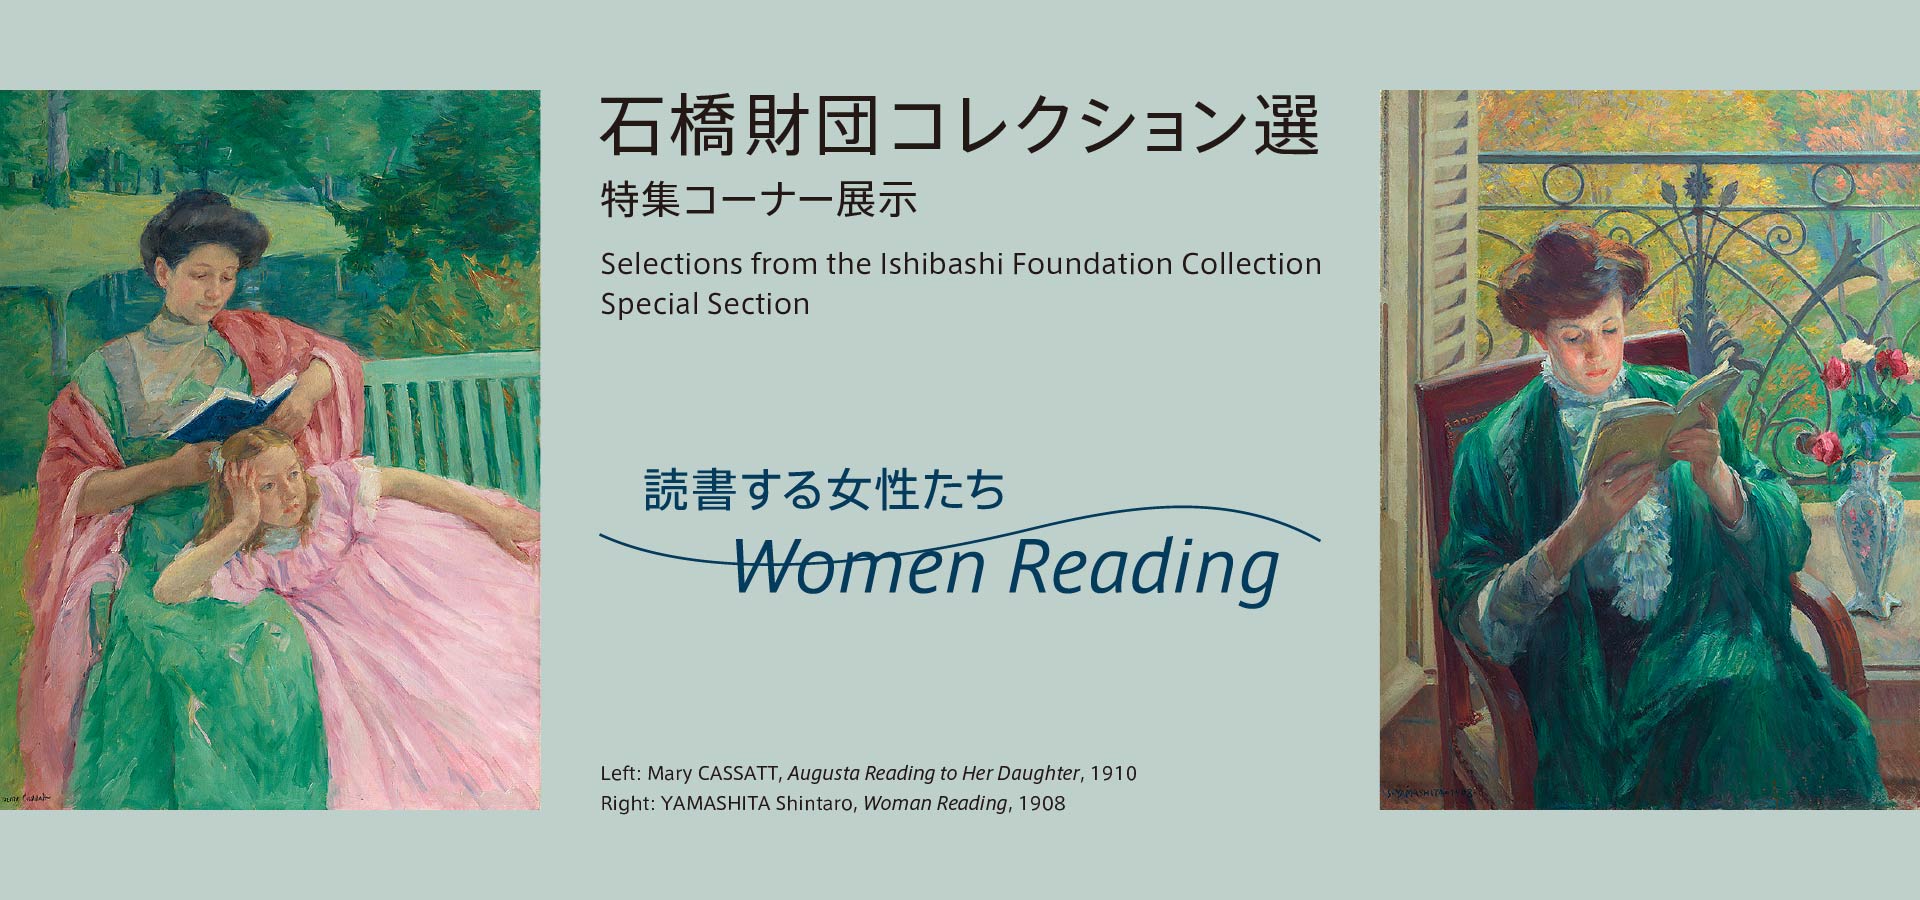 石橋財団コレクション選　特集コーナー展示　読書する女性たち